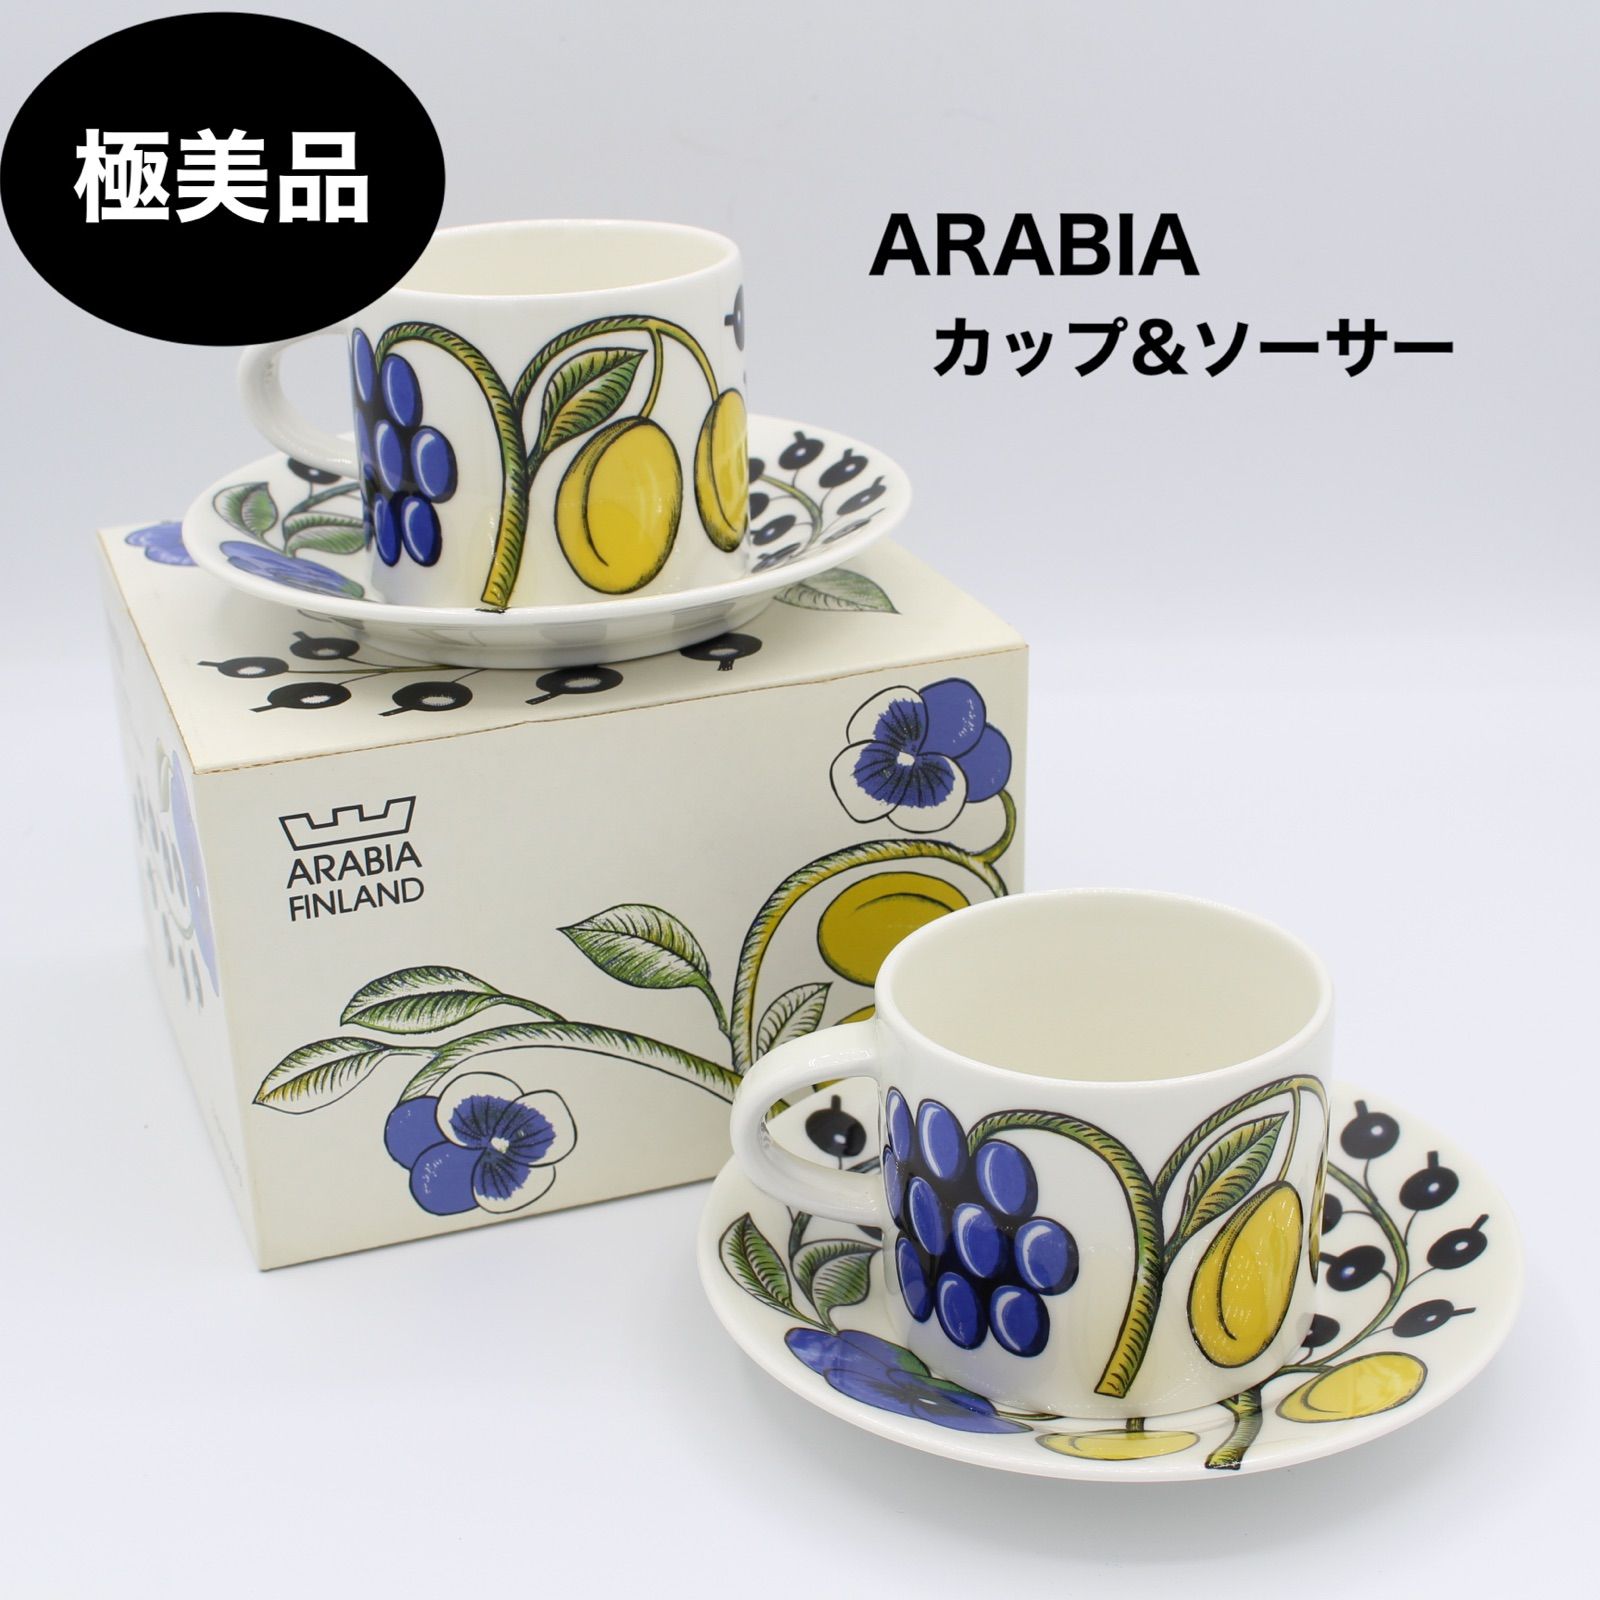 東京都板橋区にて アラビア カップ&ソーサー Paratiisi  を出張買取させて頂きました。